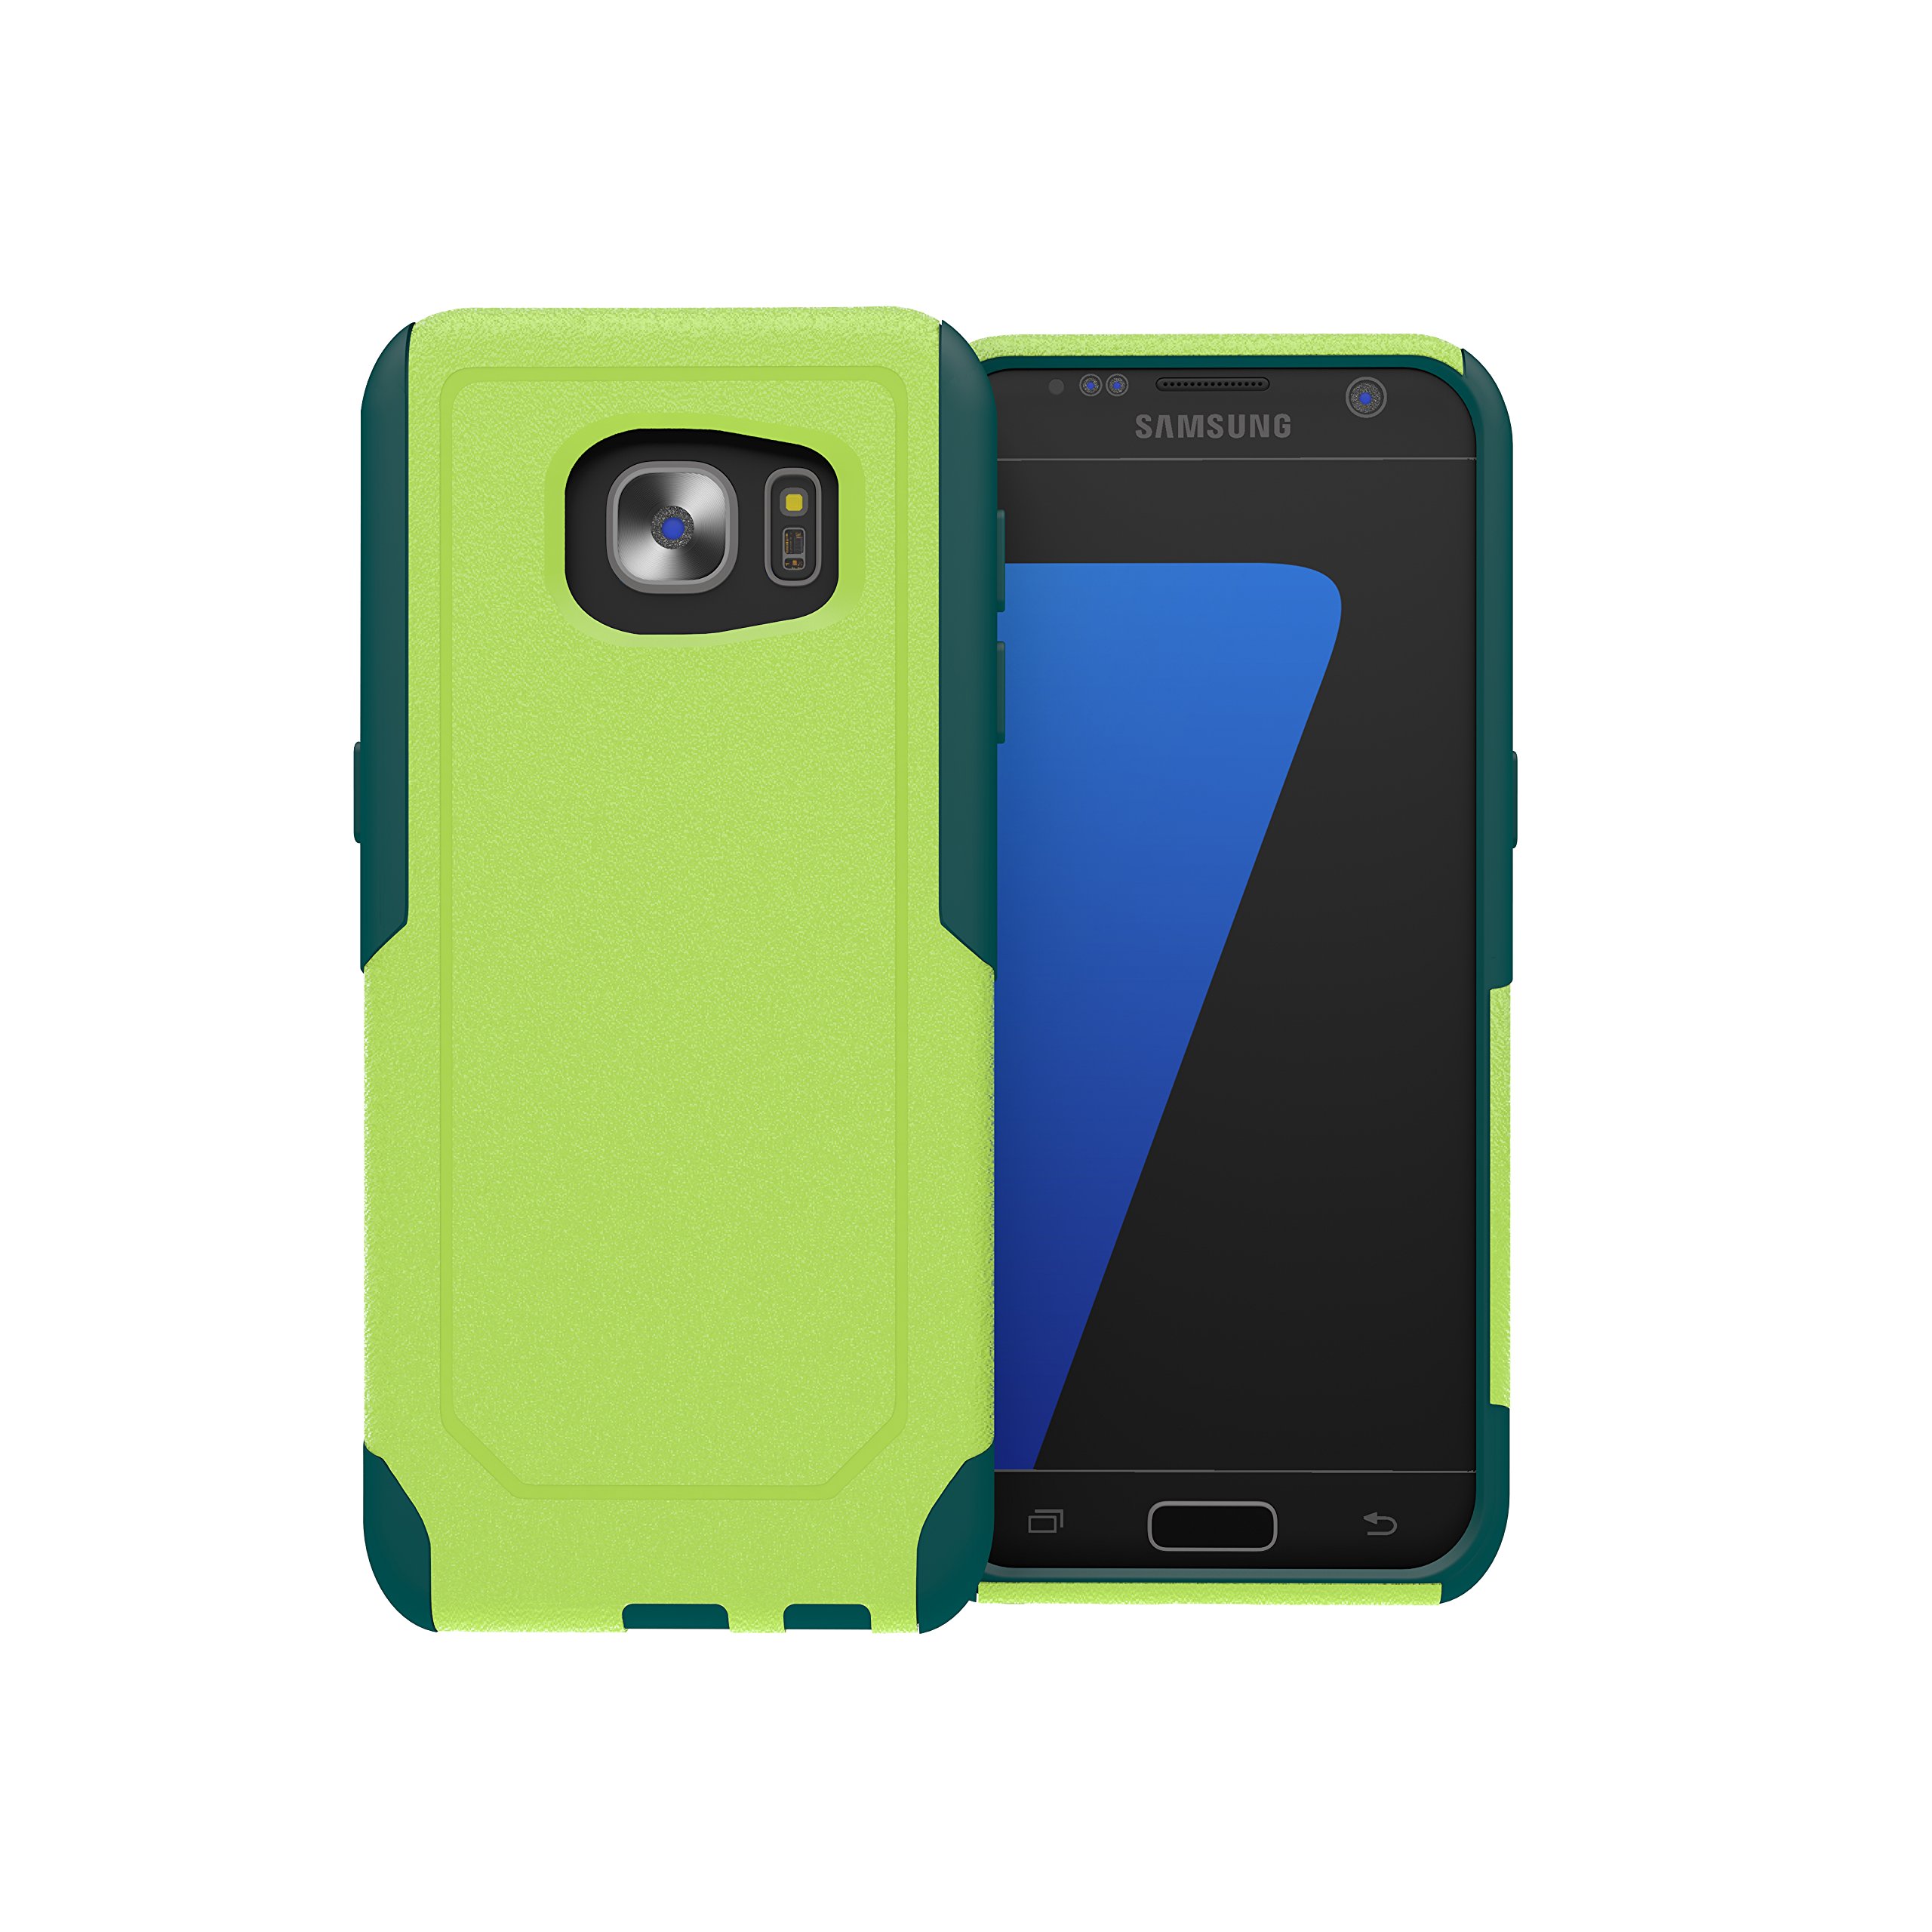 ToughBox Schutzhülle für Galaxy S7 Edge, Commute-Serie, stoßfest, schlank, robust, Limettengrün, Blaugrün, passend für OtterBox Defender und Commuter Series Clip